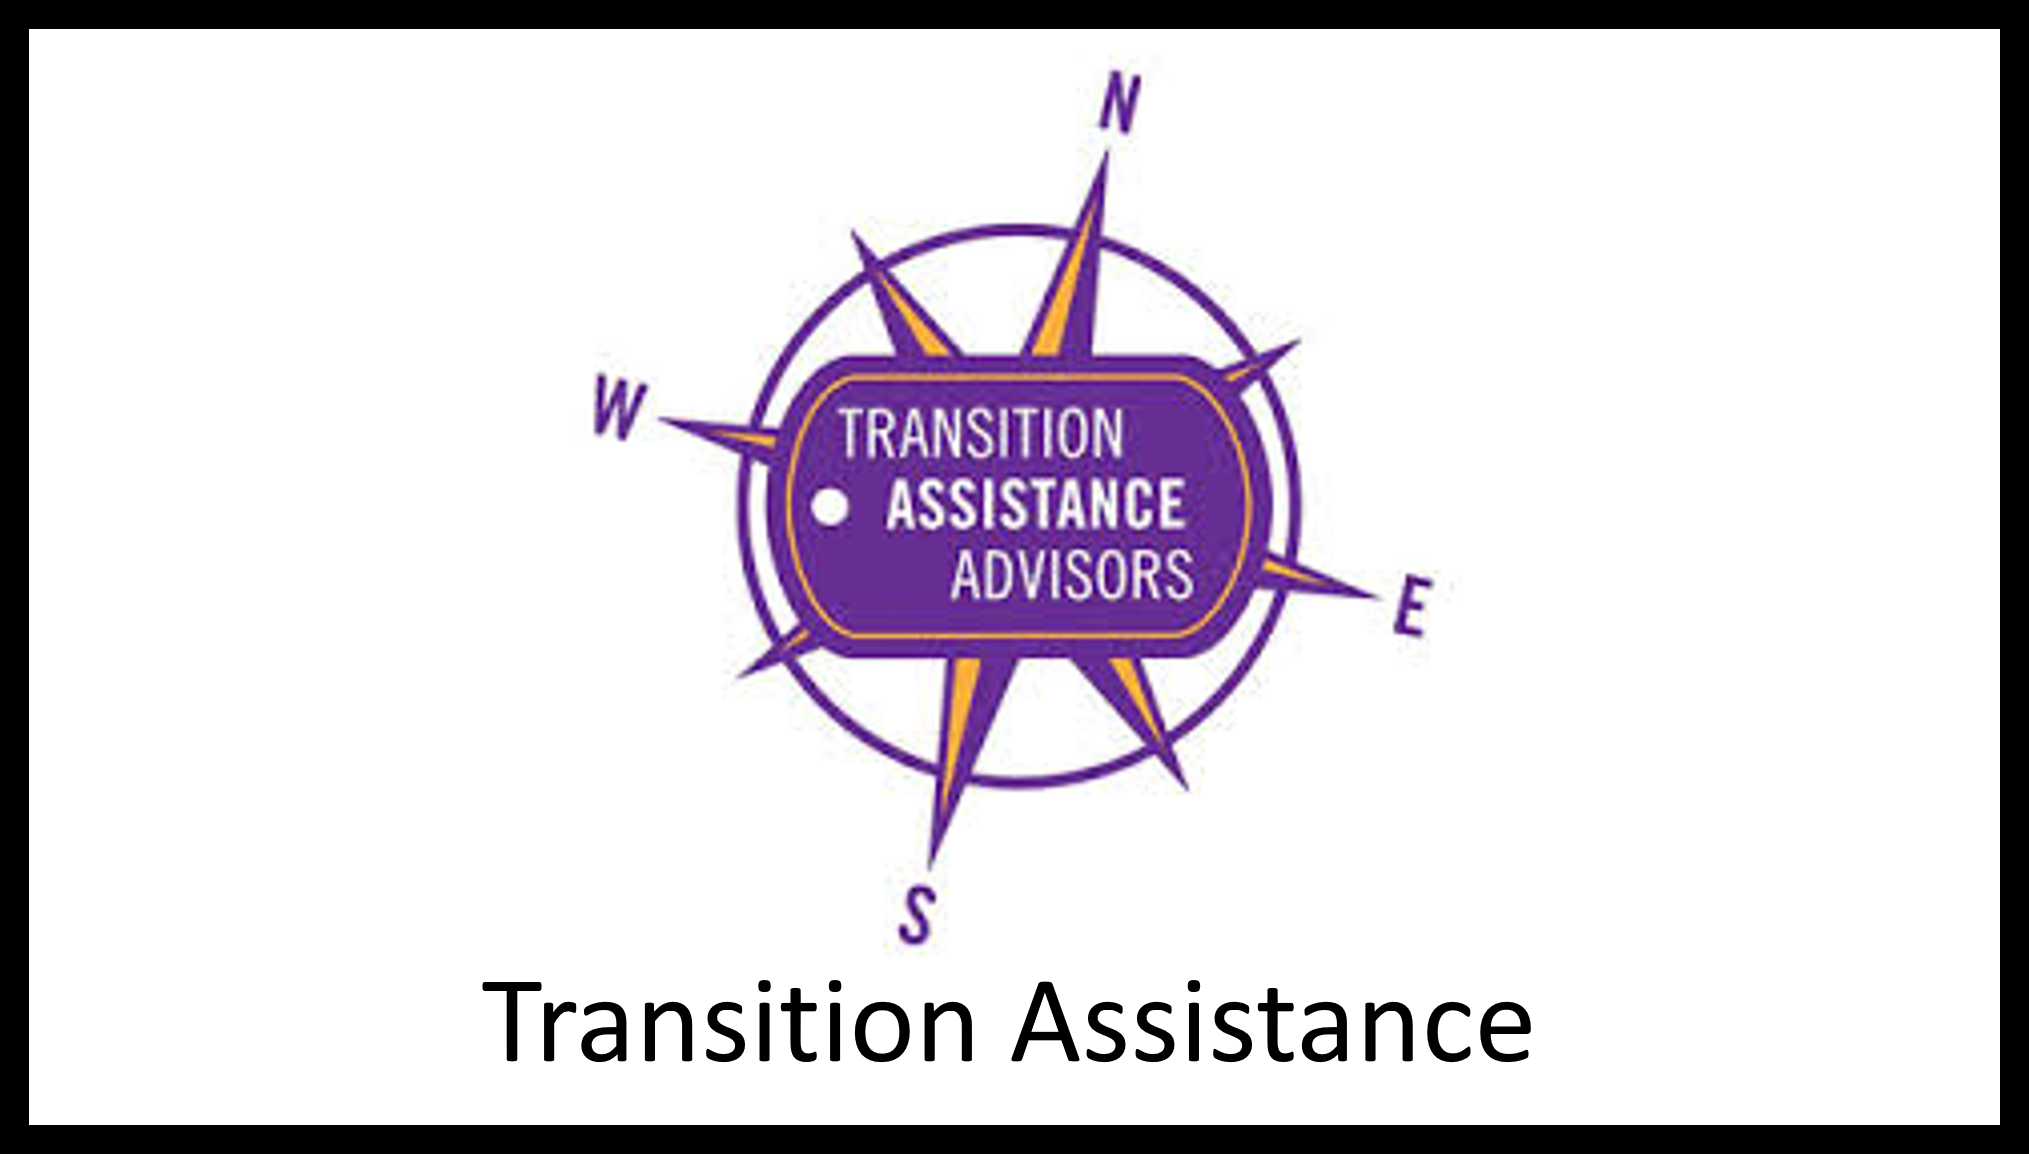 Clickable transition assistance emblem